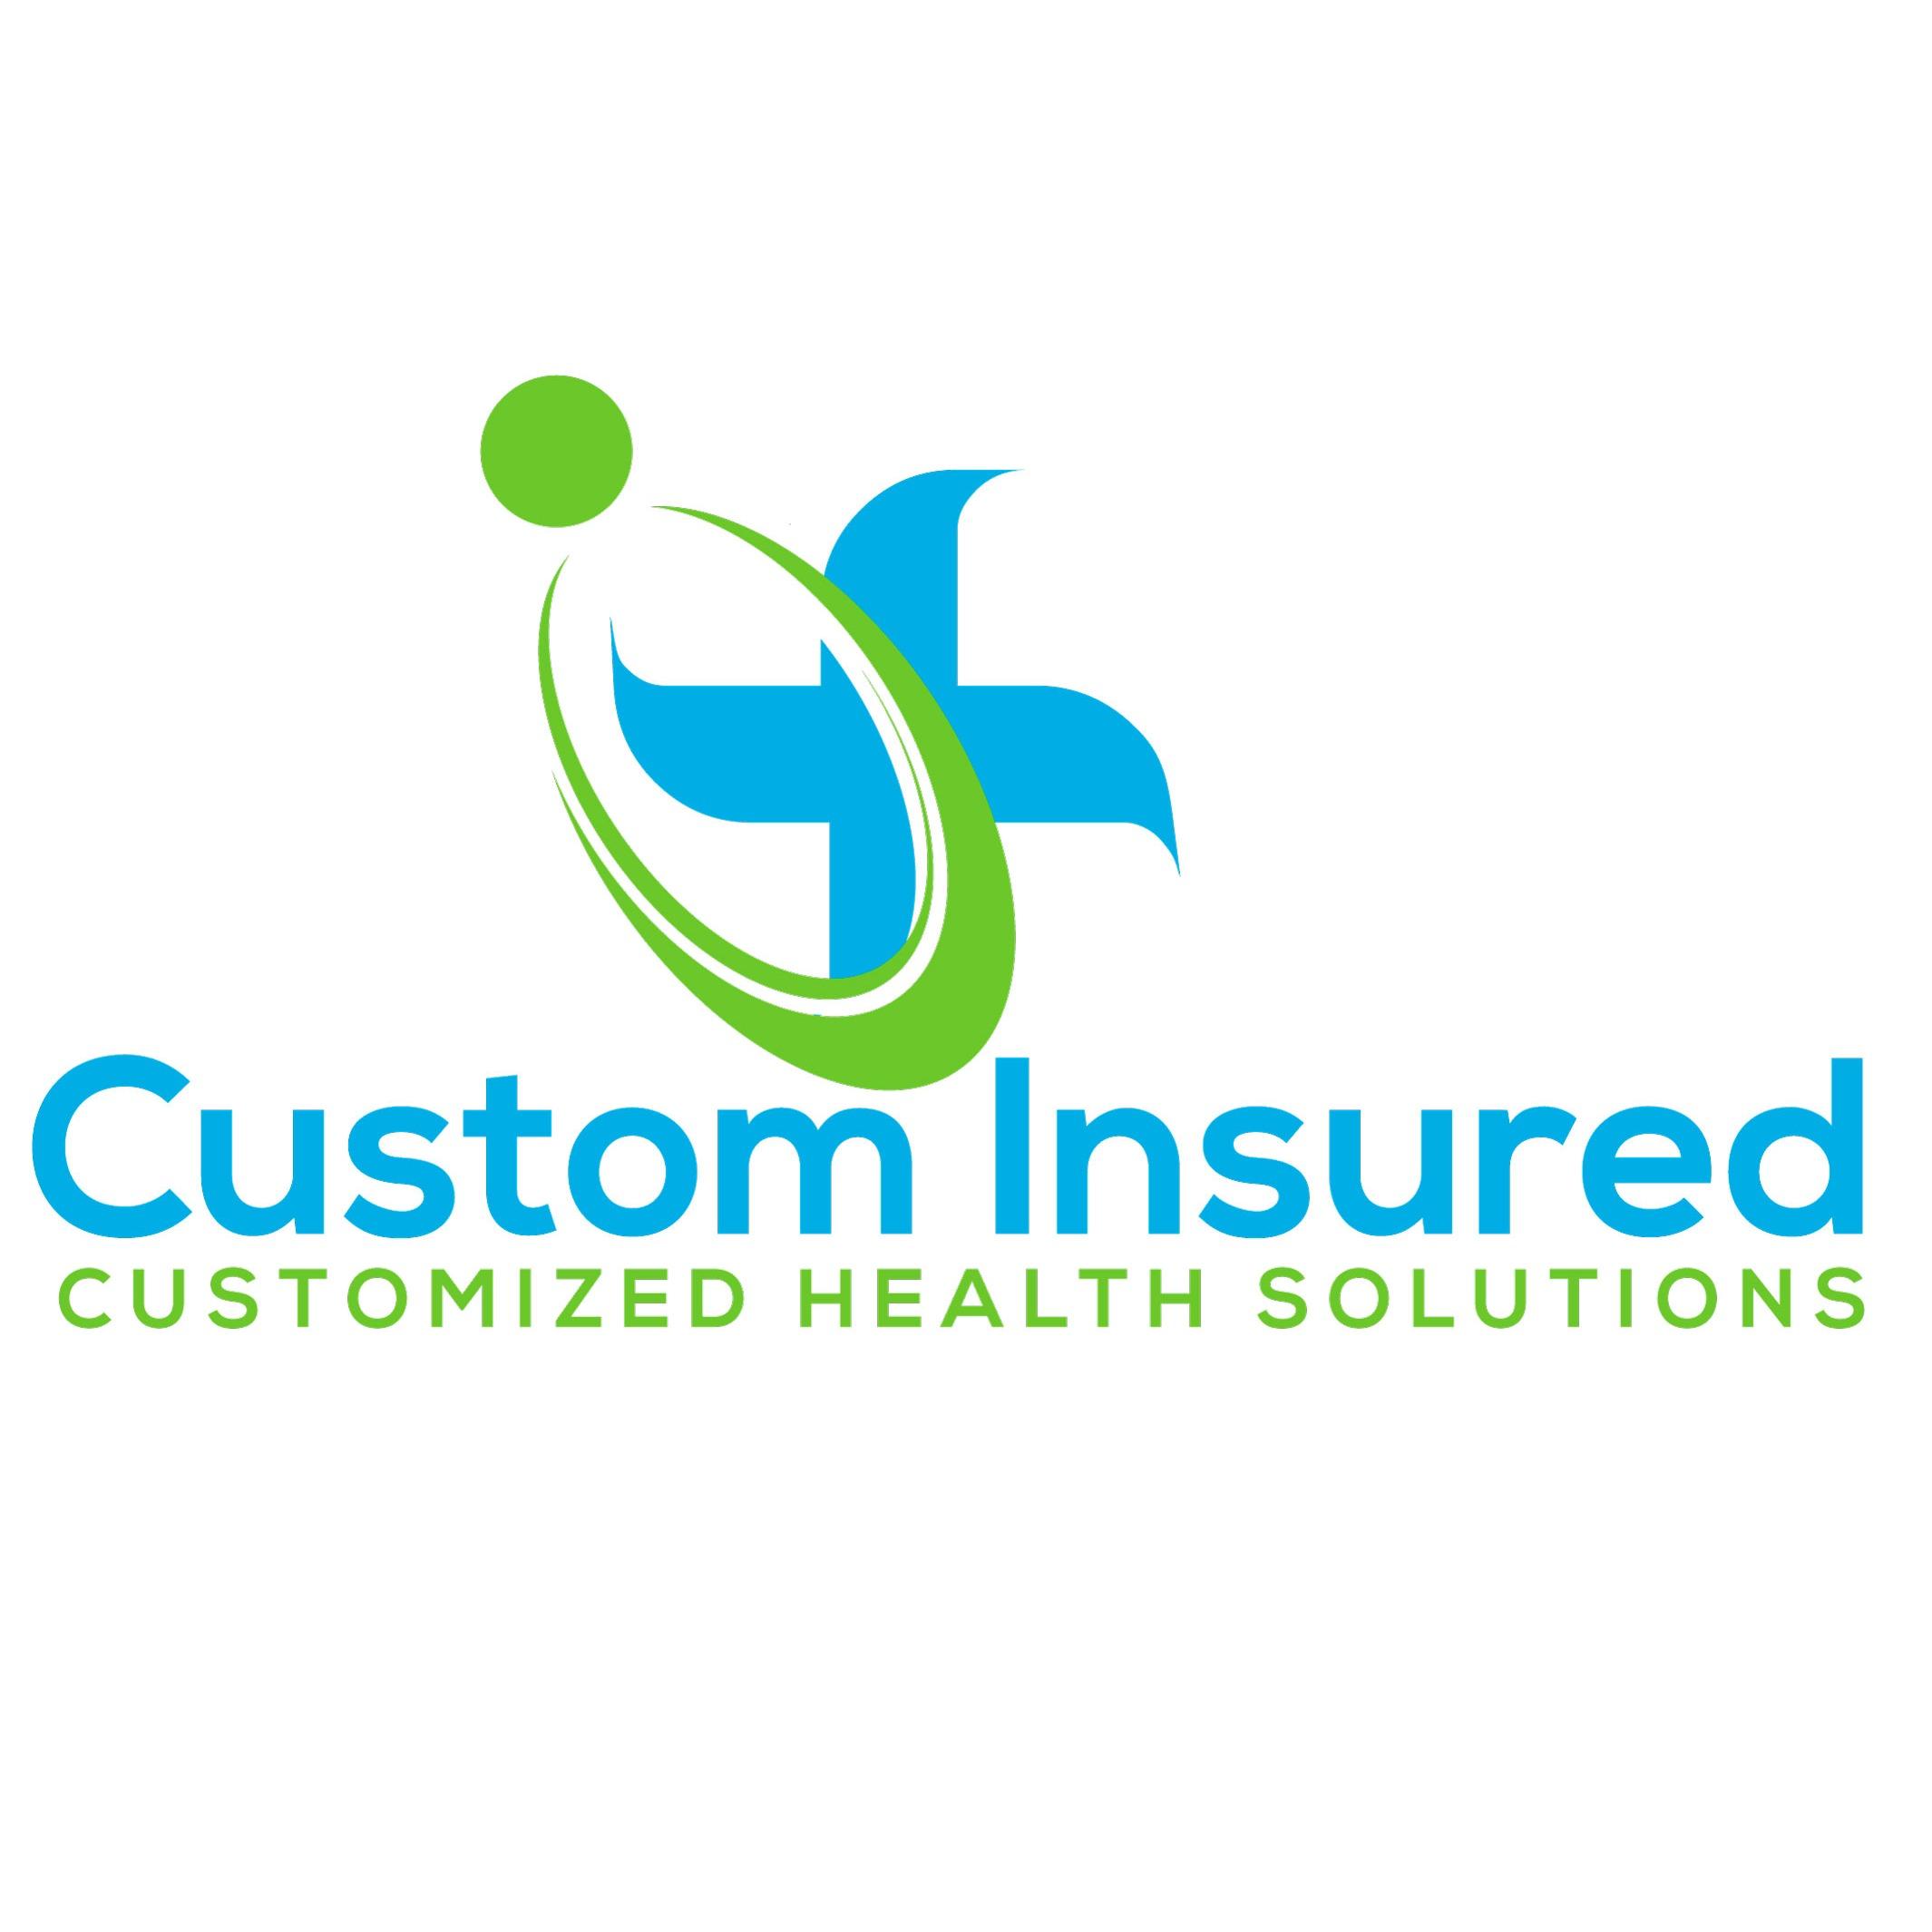 Custom Insured Logo